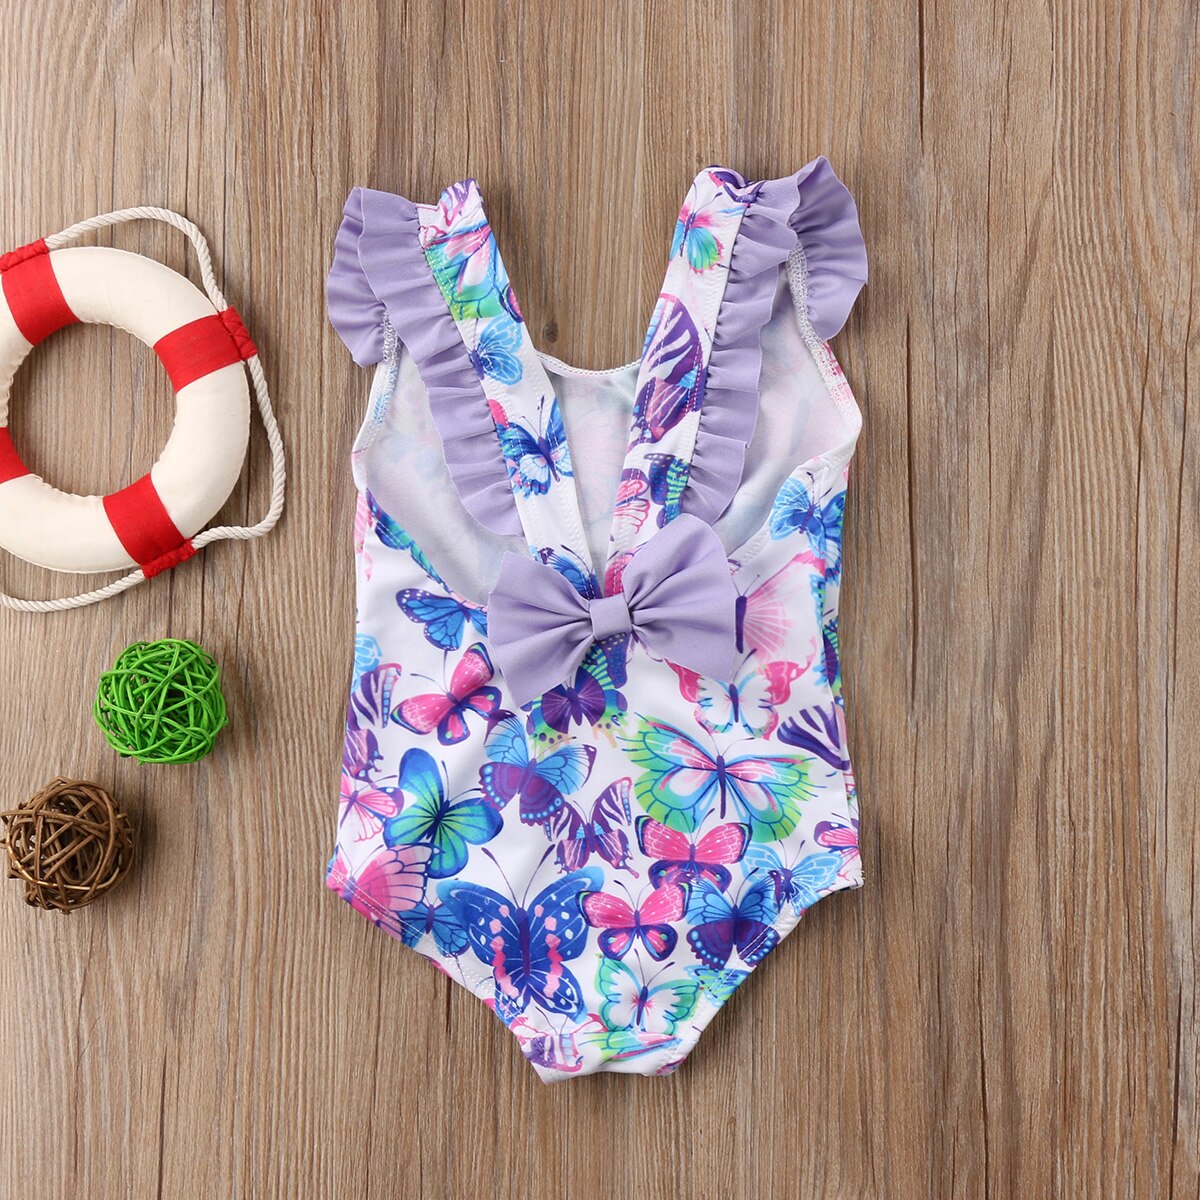 Børn baby pige badedragt blomst badetøj tankini bikini badedragt soldragt biquini strandtøj